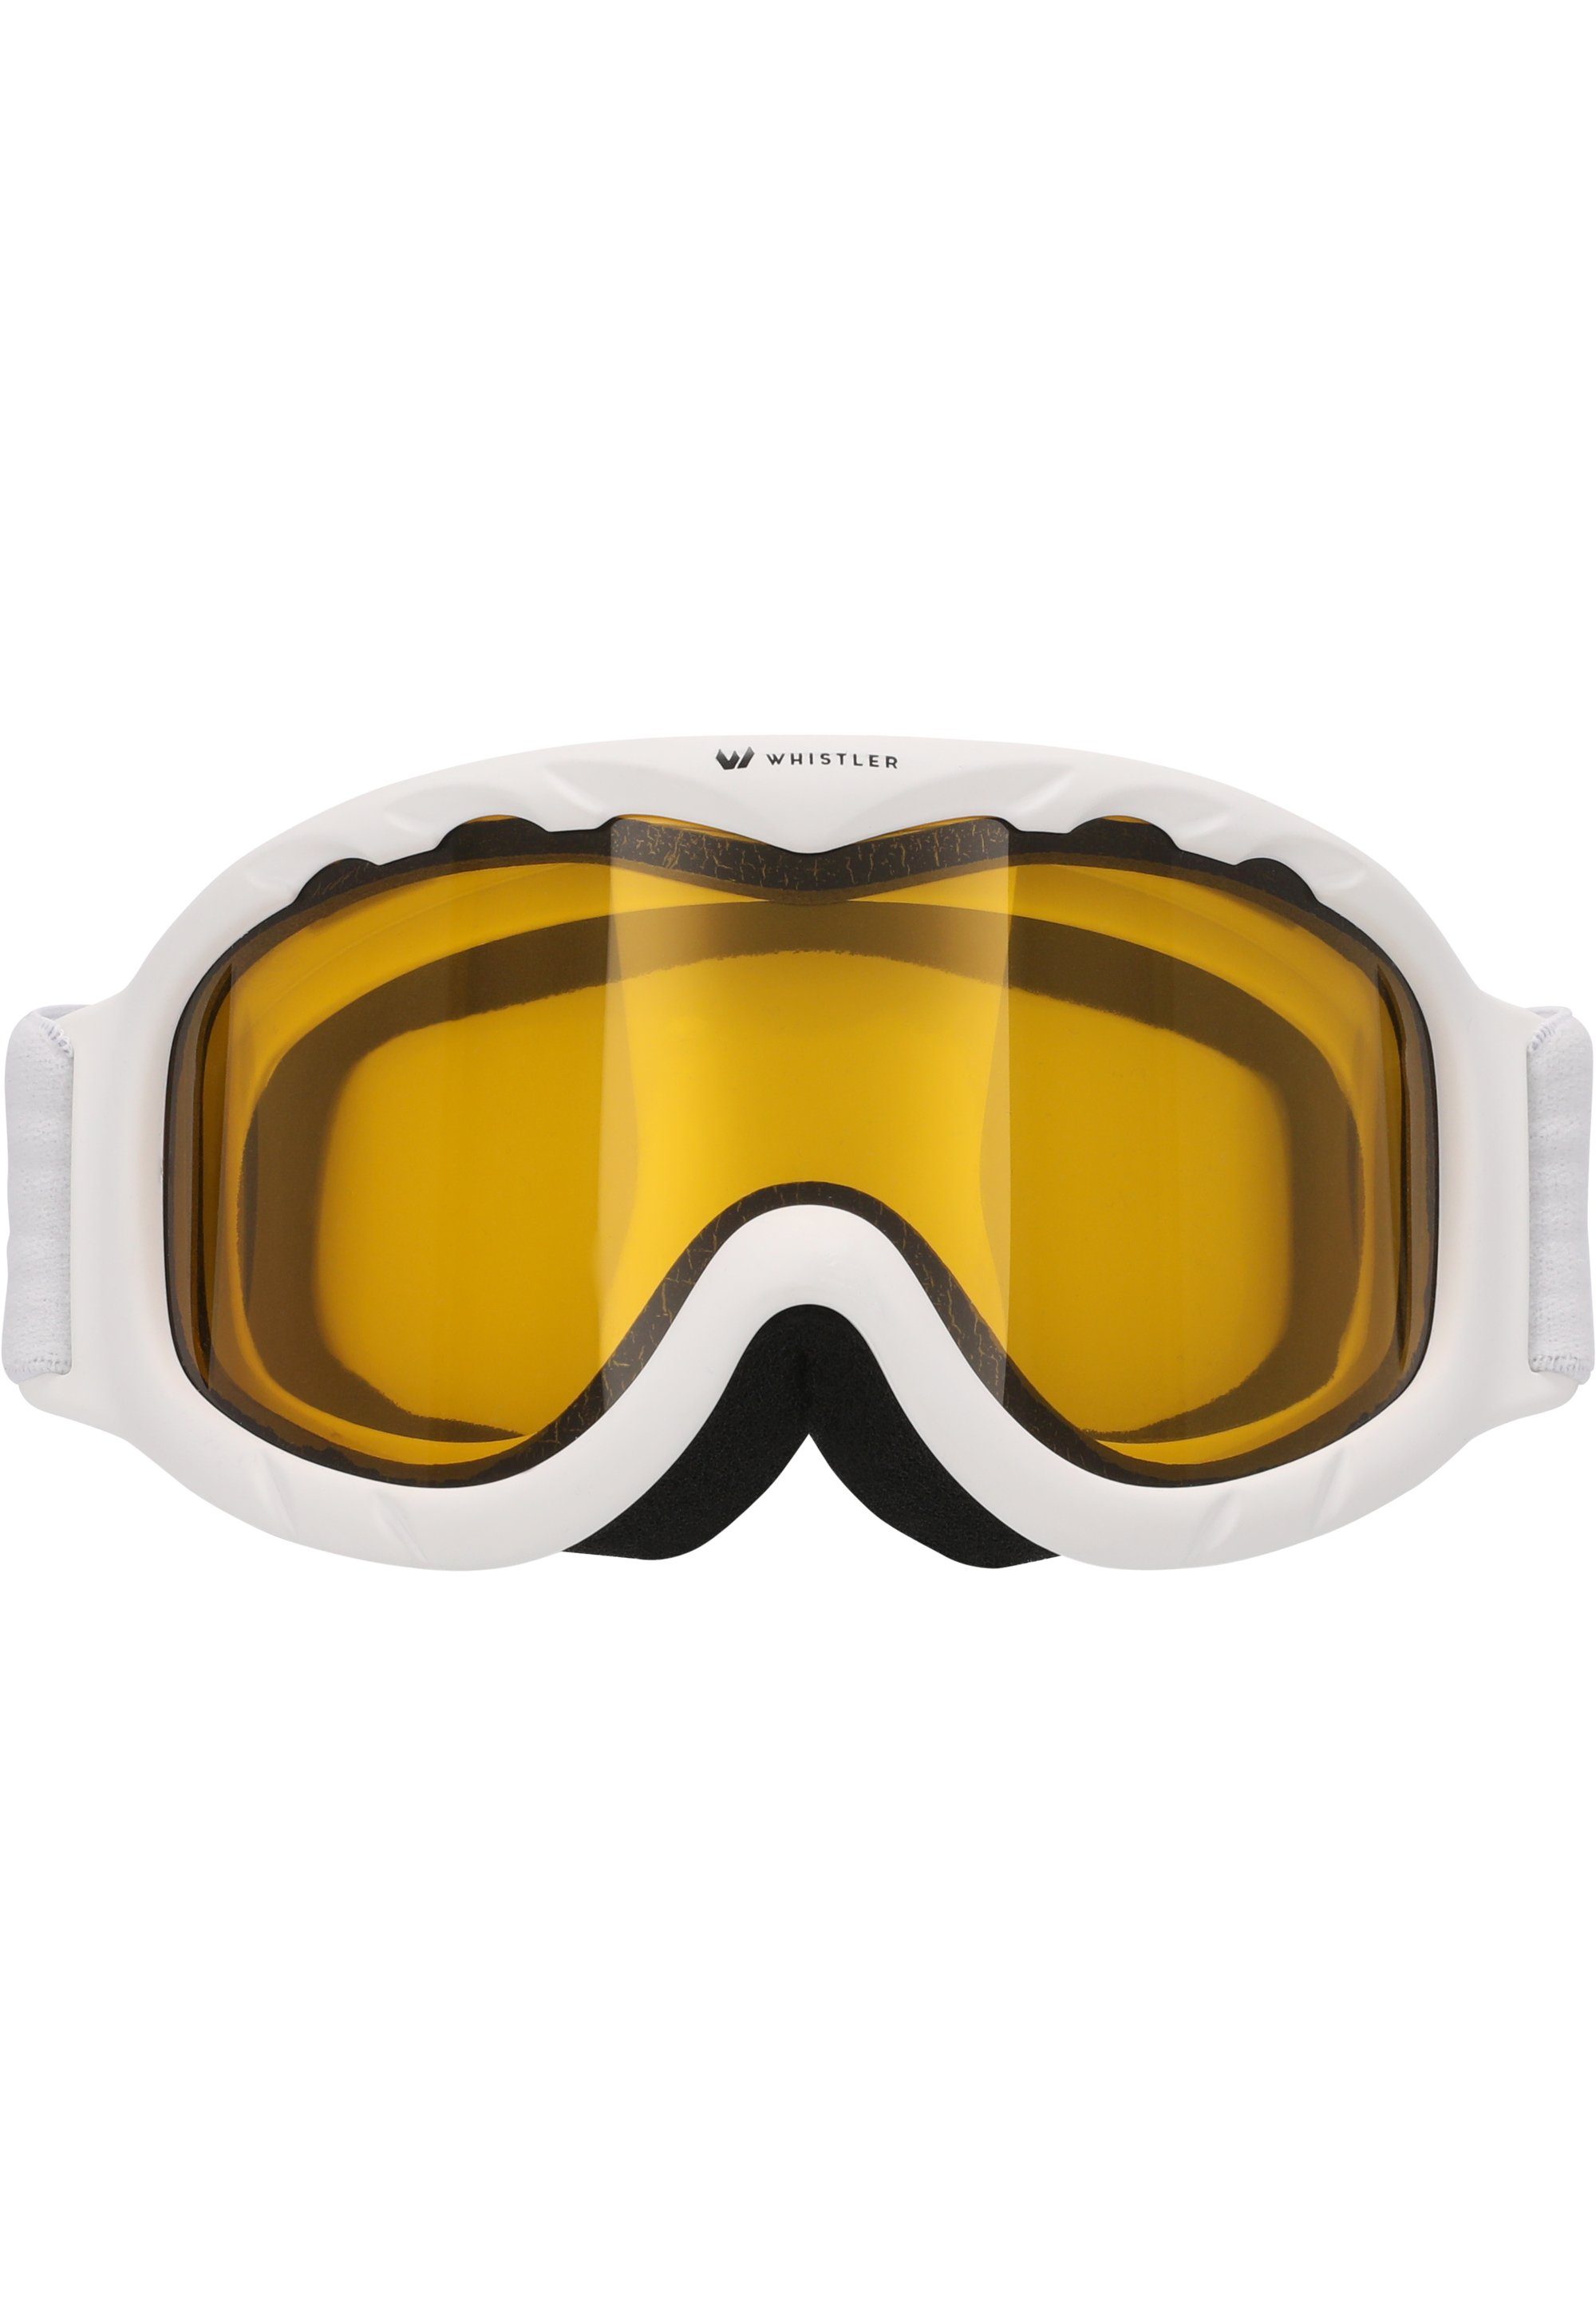 Ski Skibrille Jr. Anti-Fog-Beschichtung WHISTLER Goggle, mit WS300